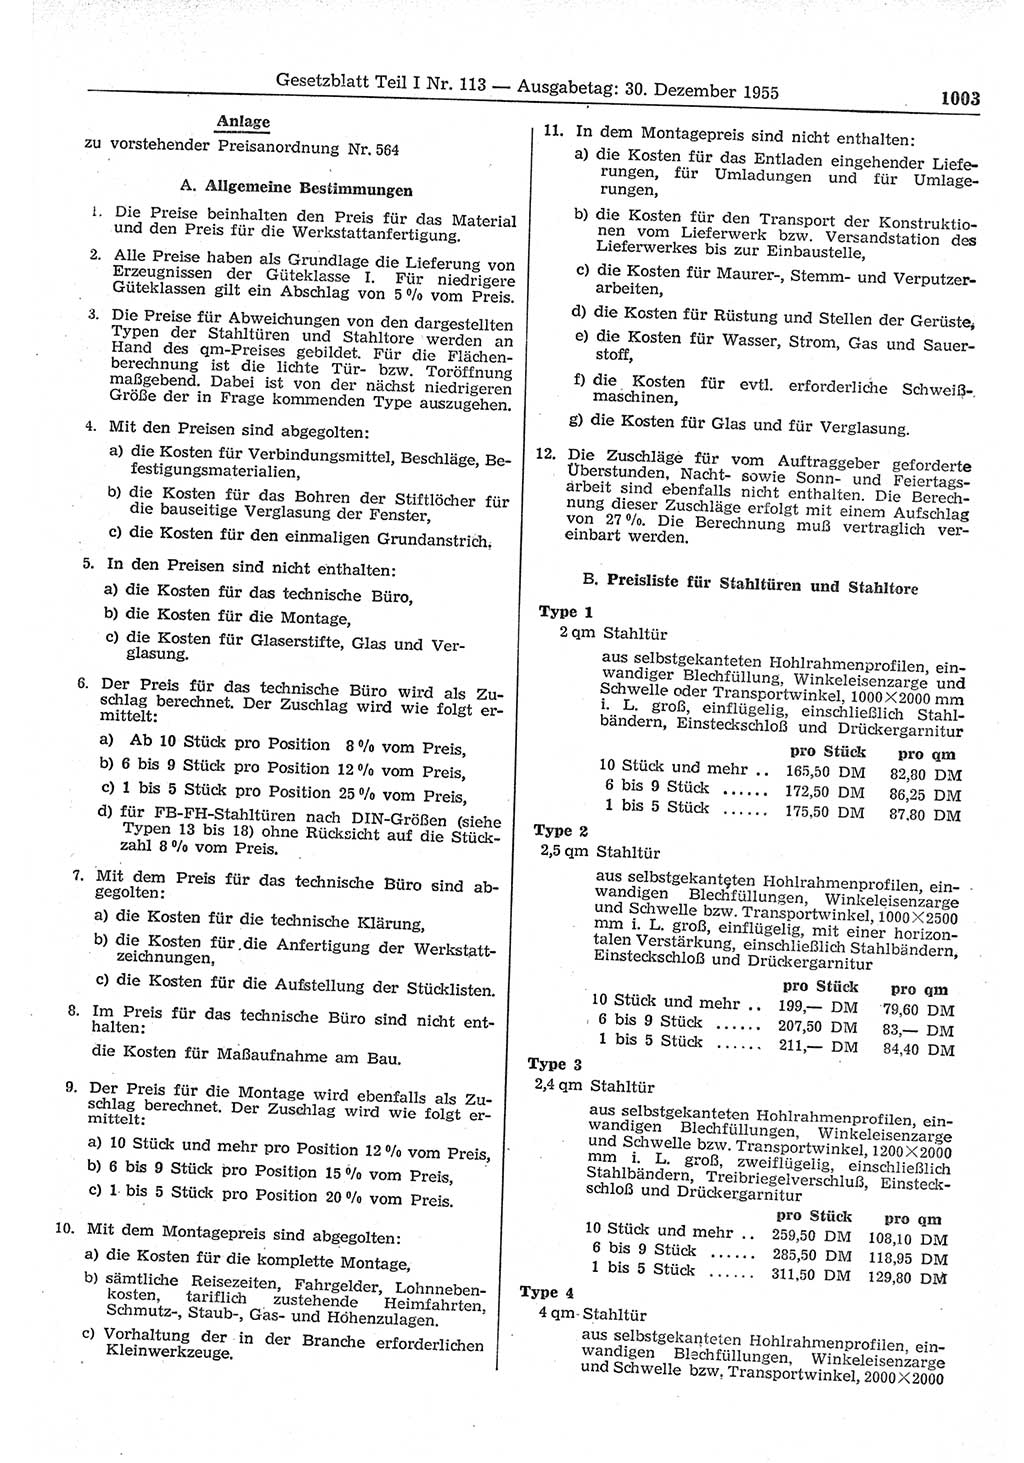 Gesetzblatt (GBl.) der Deutschen Demokratischen Republik (DDR) Teil Ⅰ 1955, Seite 1003 (GBl. DDR Ⅰ 1955, S. 1003)